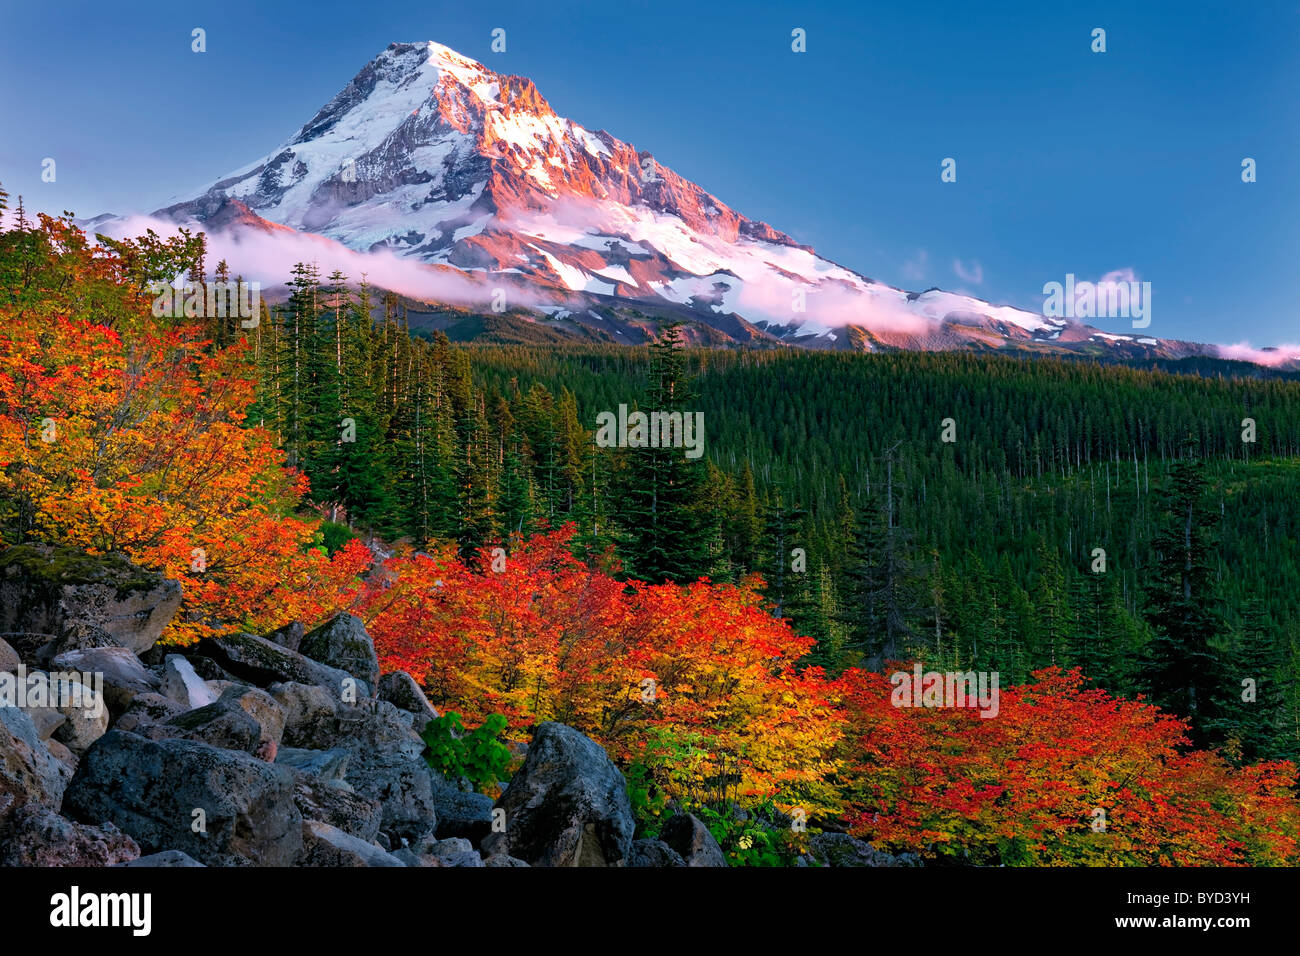 Autumn twilight sur Oregon's Mt Hood avec Fiery red vine de l'érable. Banque D'Images